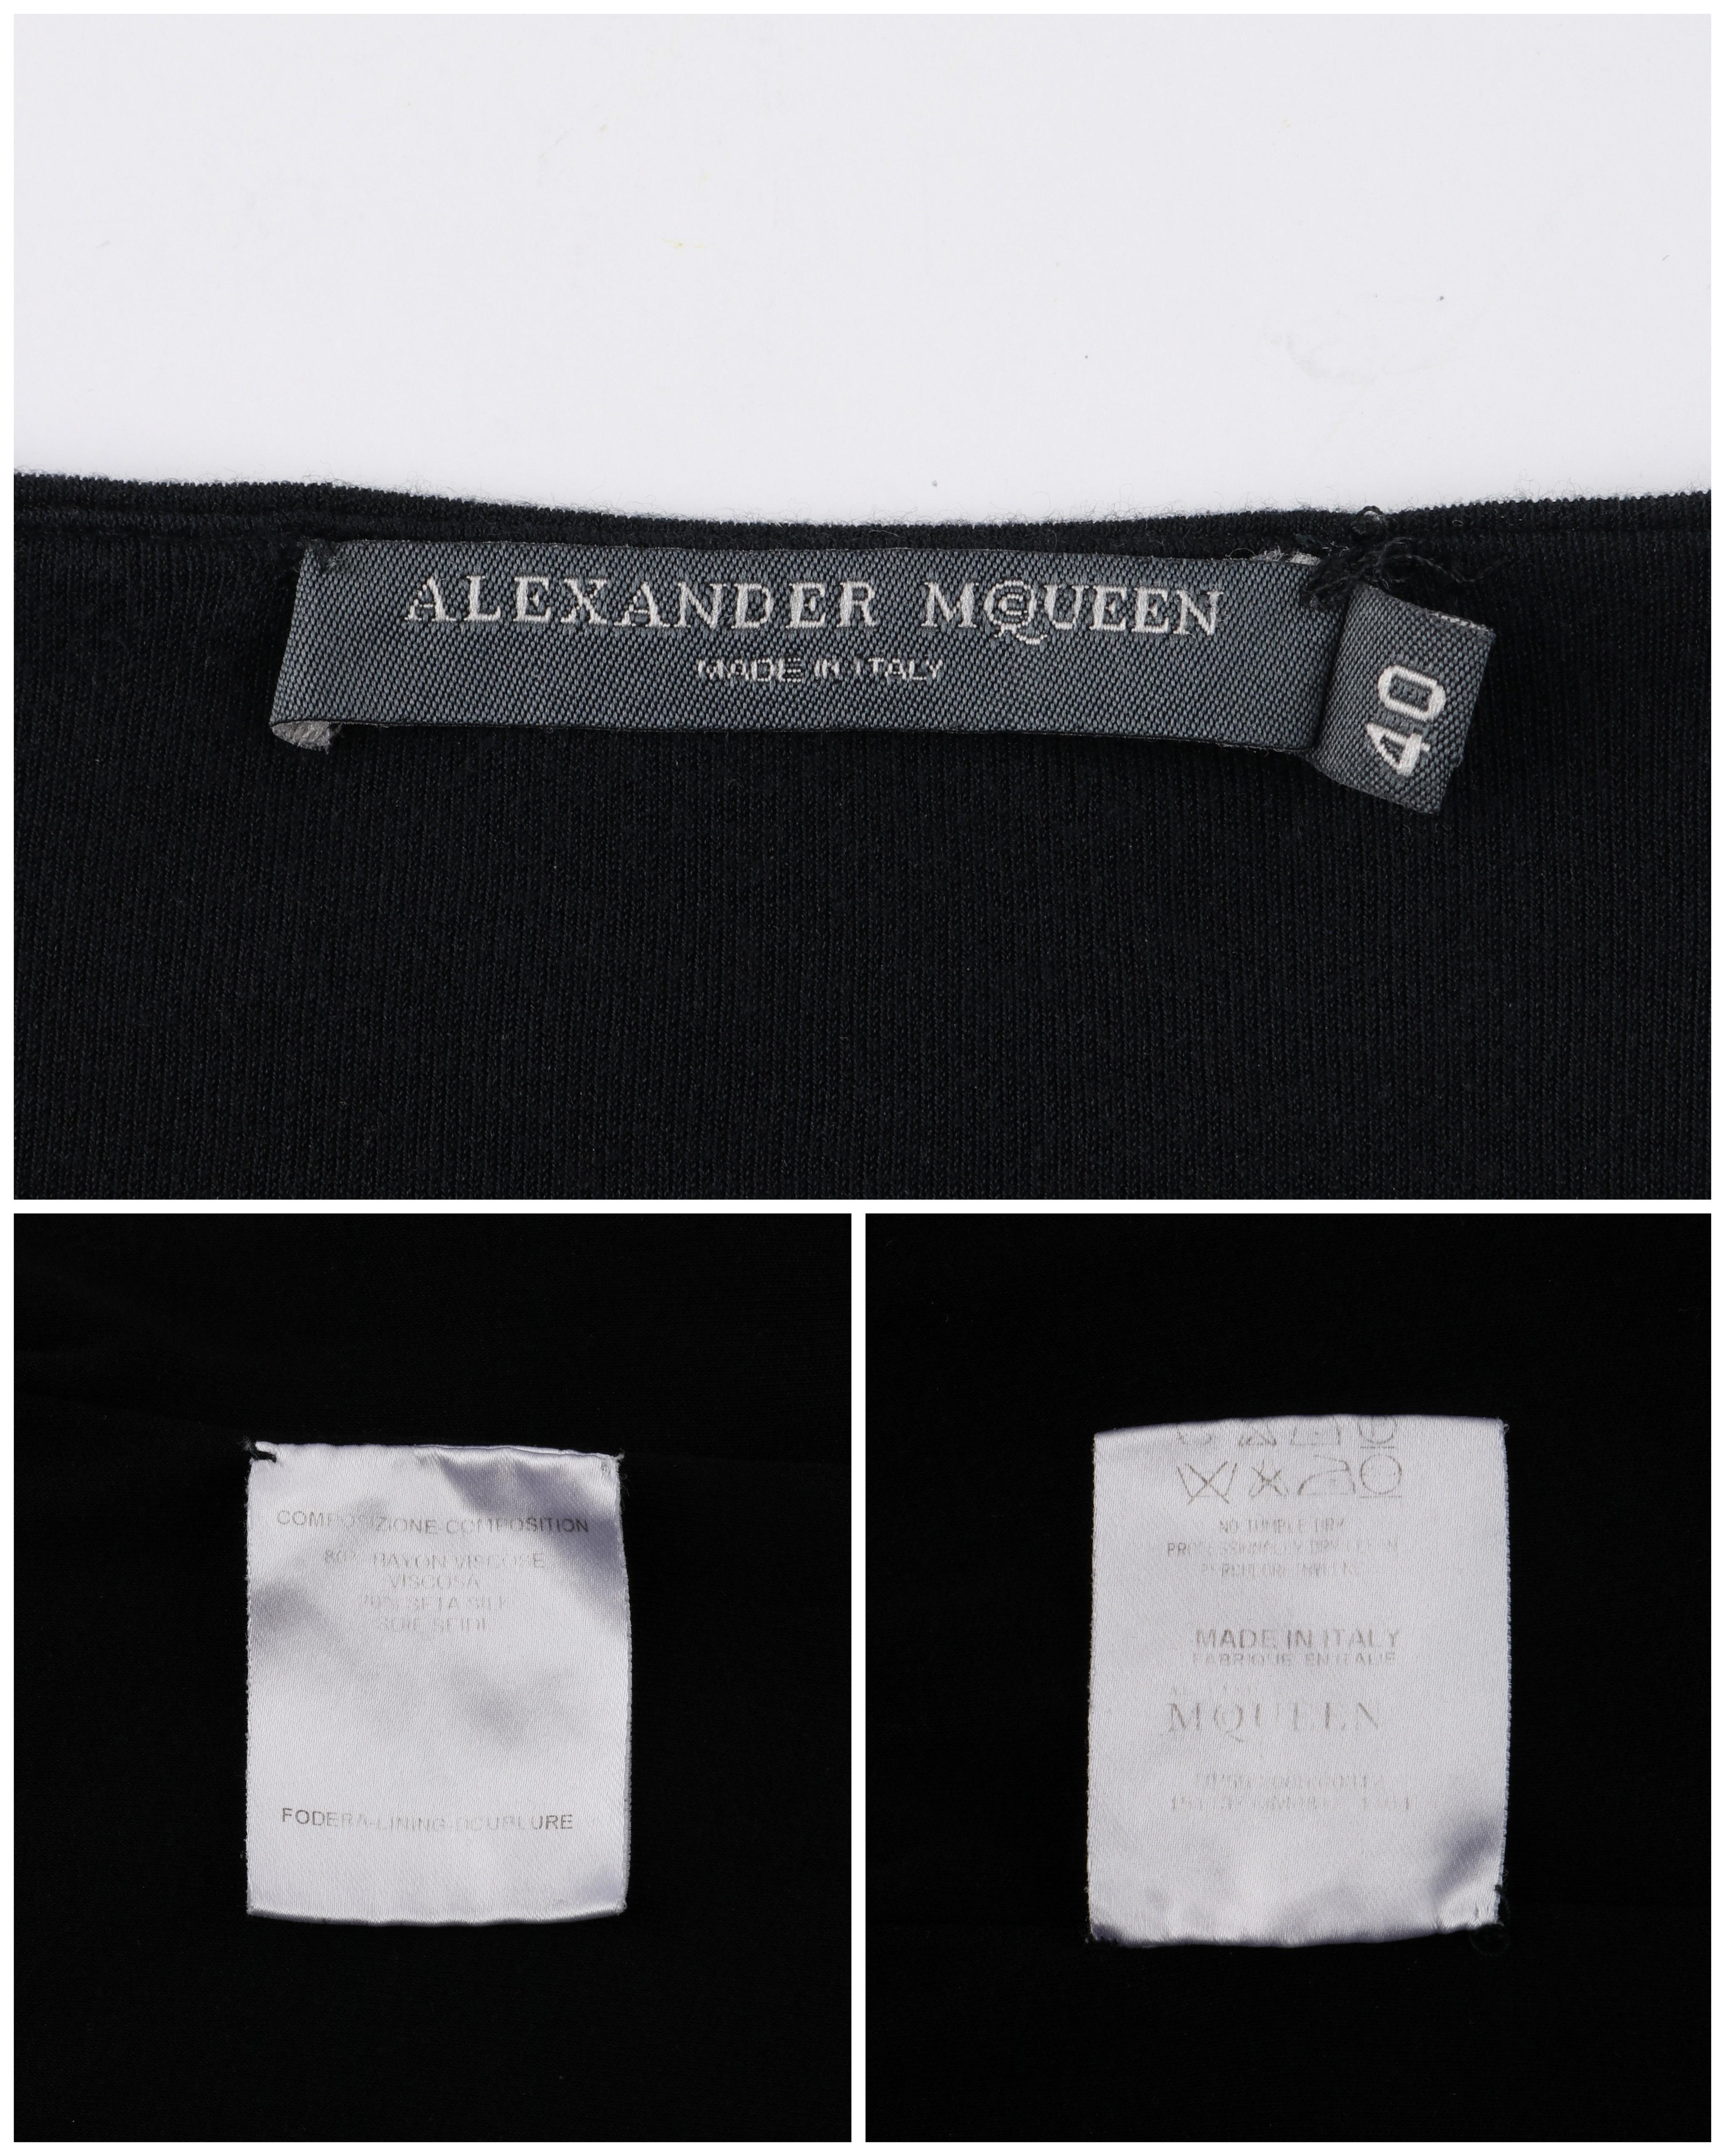 ALEXANDER McQUEEN S/S 2006 